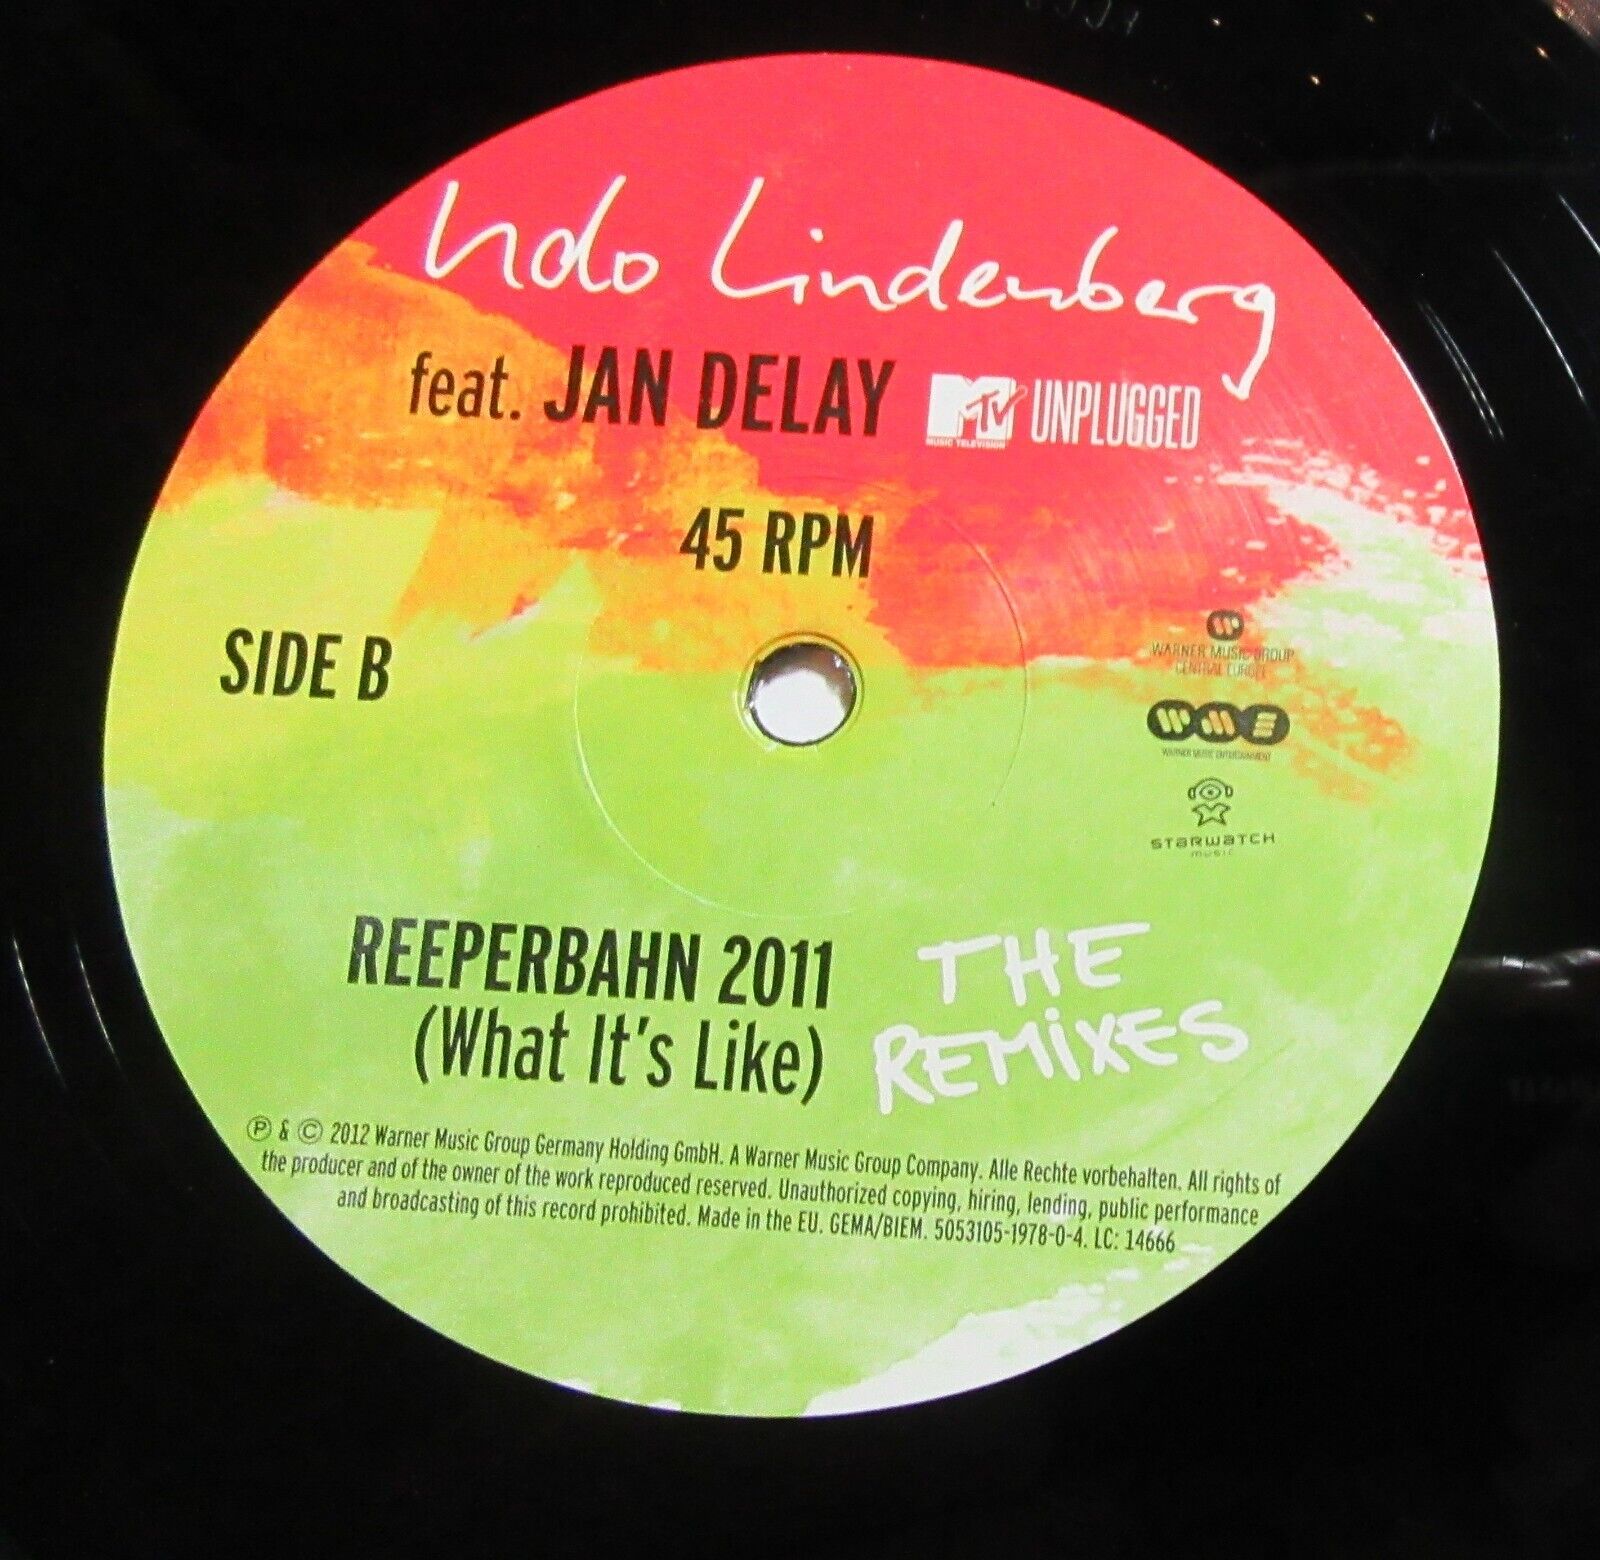 Maxi Single Udo Lindenberg feat Jan Delay Reeperbahn 2011 MTV unplugged Vinyl